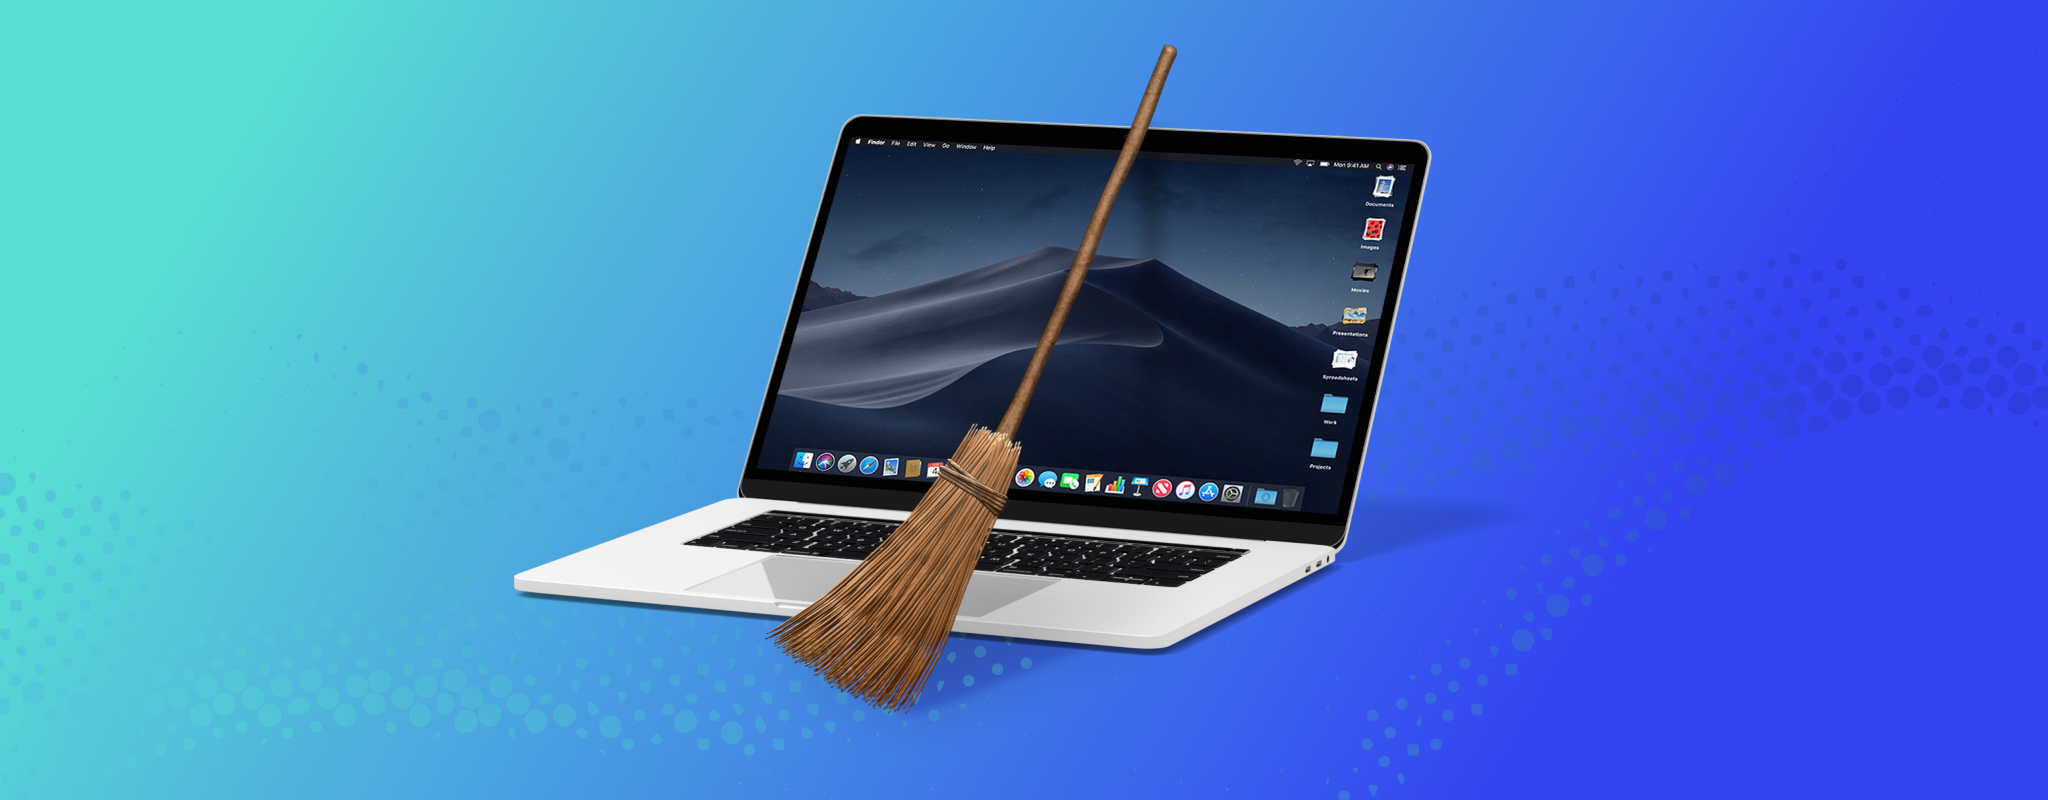 best mac file cleaner reddit